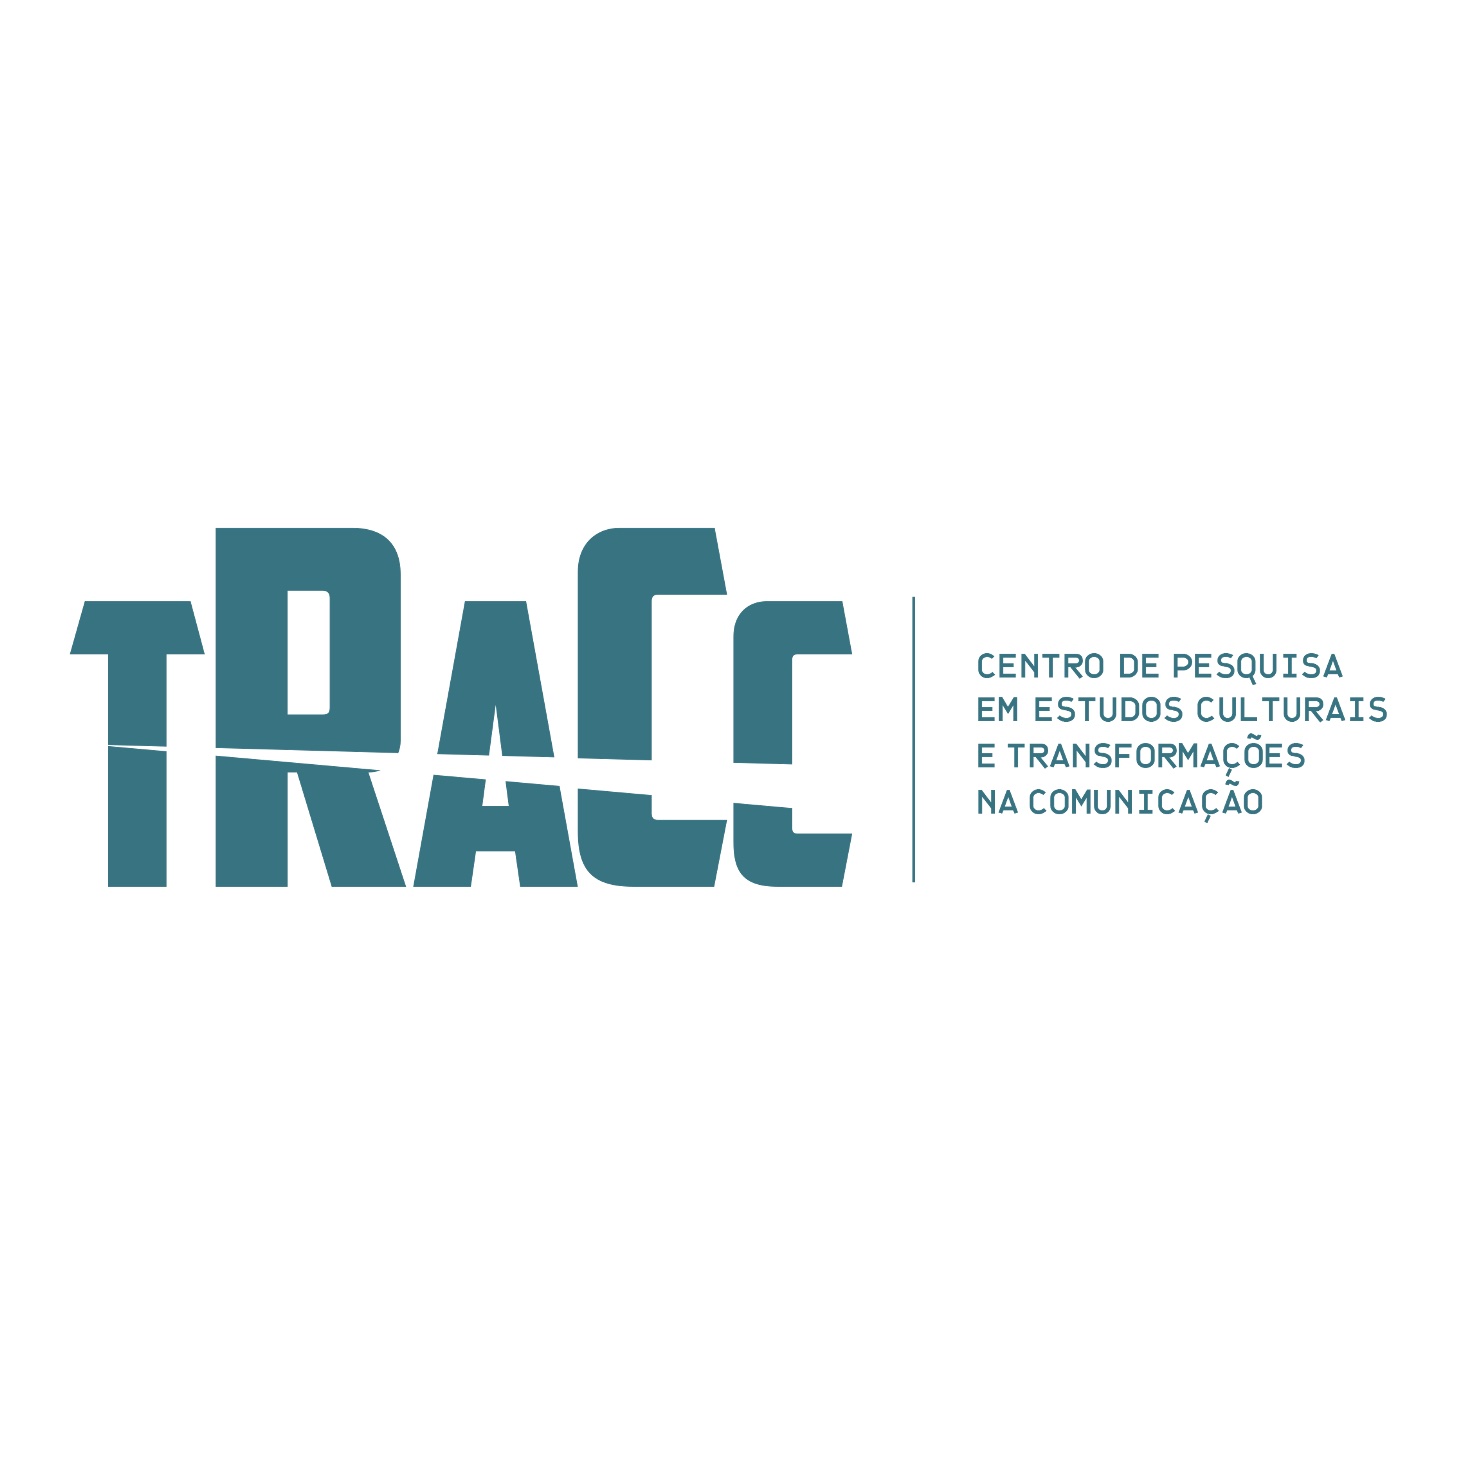 Sobre fundo branco, destaca-se a sigla TRACC, em cor turquesa. Ao lado, lê-se o significado da sigla: Centro de Pesquisa em Estudos Culturais e Transformações na Comunicação.